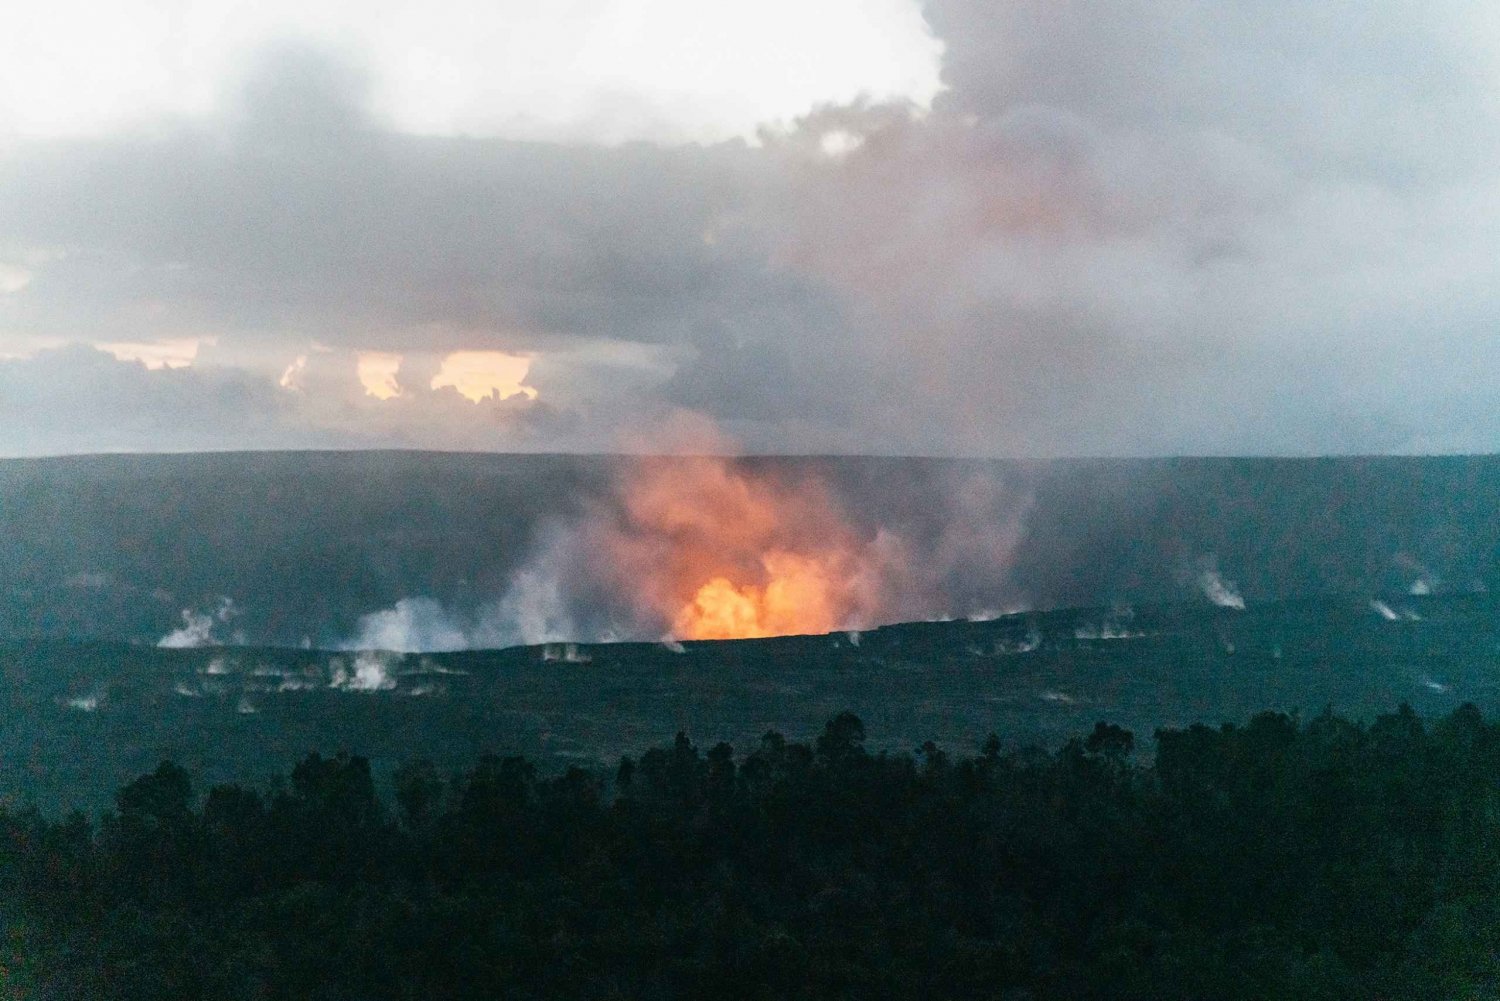 Big Island: Evening Volcano Explorer fra Hilo